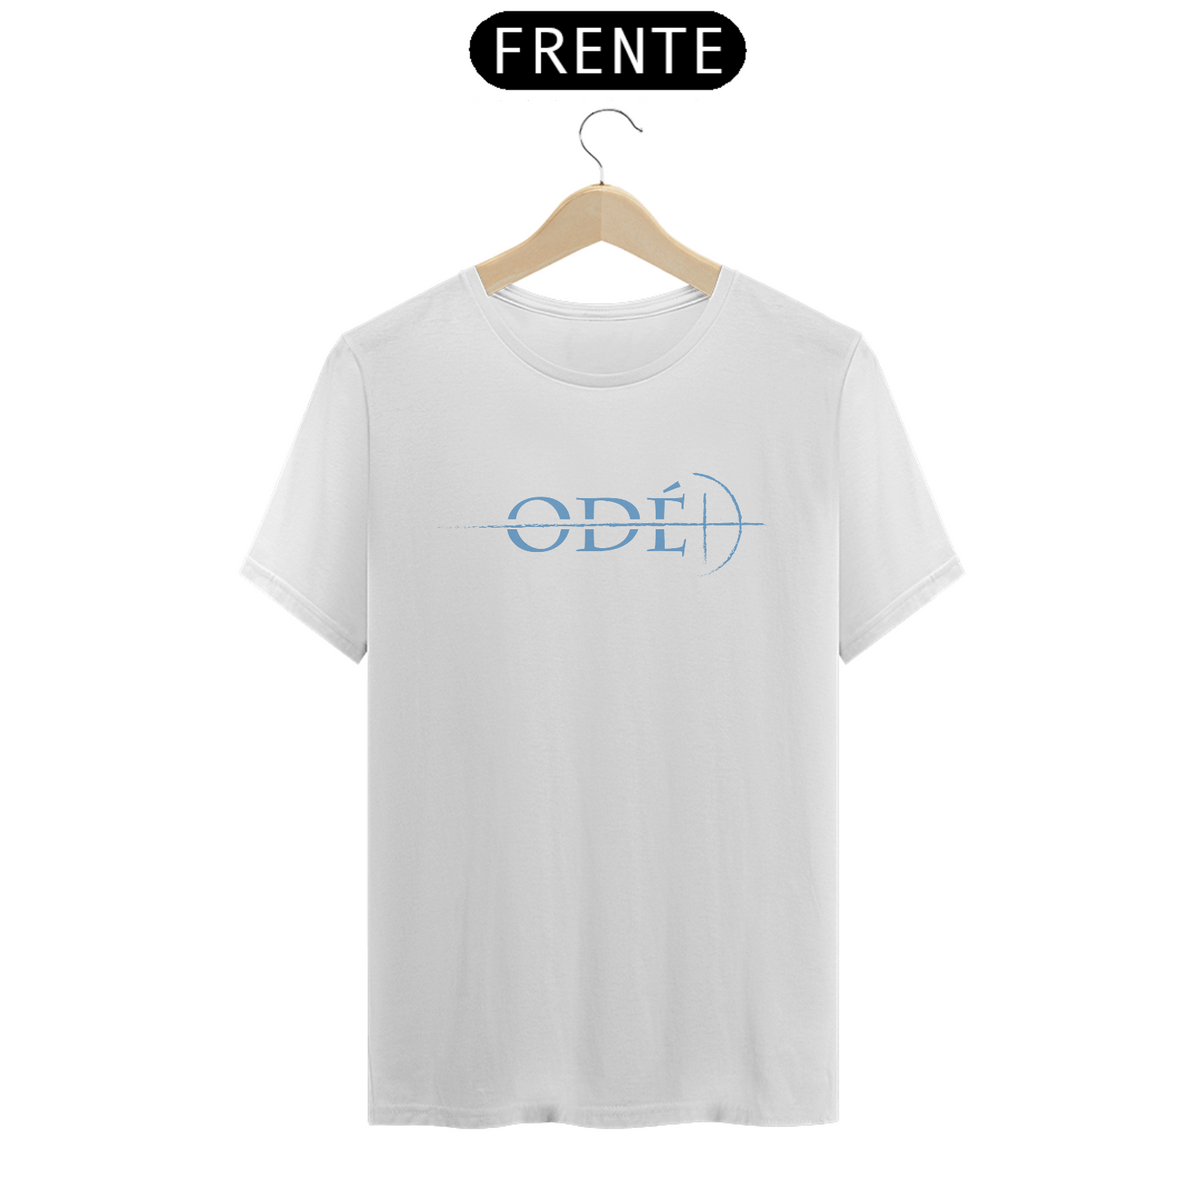 Nome do produto: T-Shirt Classic Branca - Okan Odé